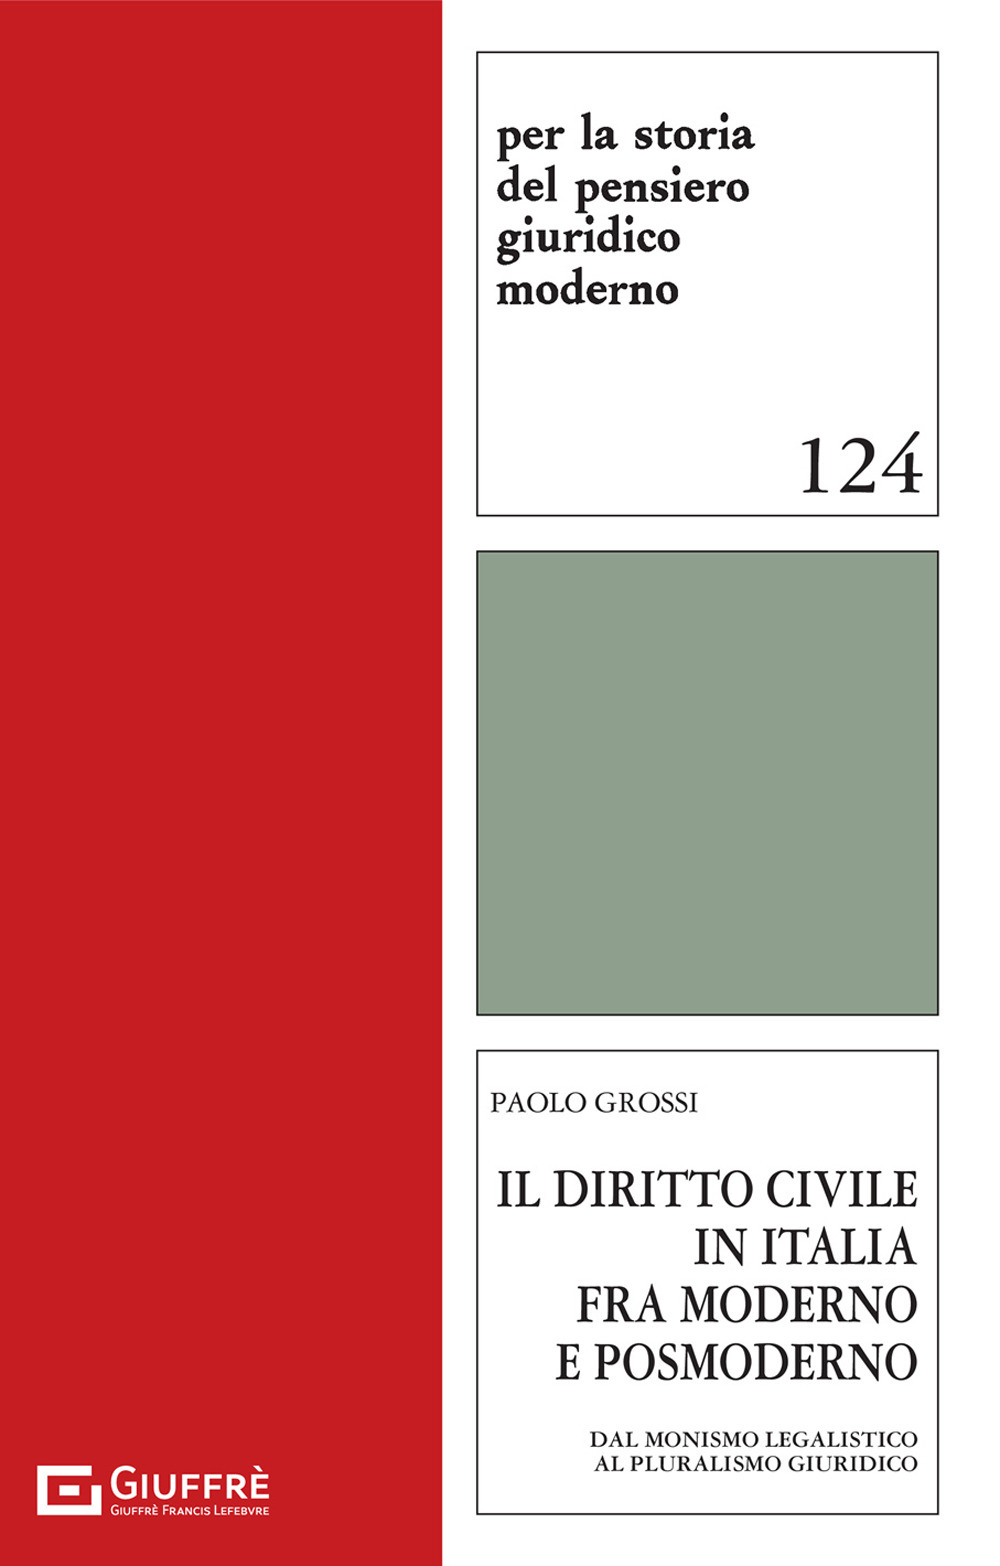 Il diritto civile in Italia fra moderno e postmoderno (dal monismo legalistico al pluralismo giuridico)